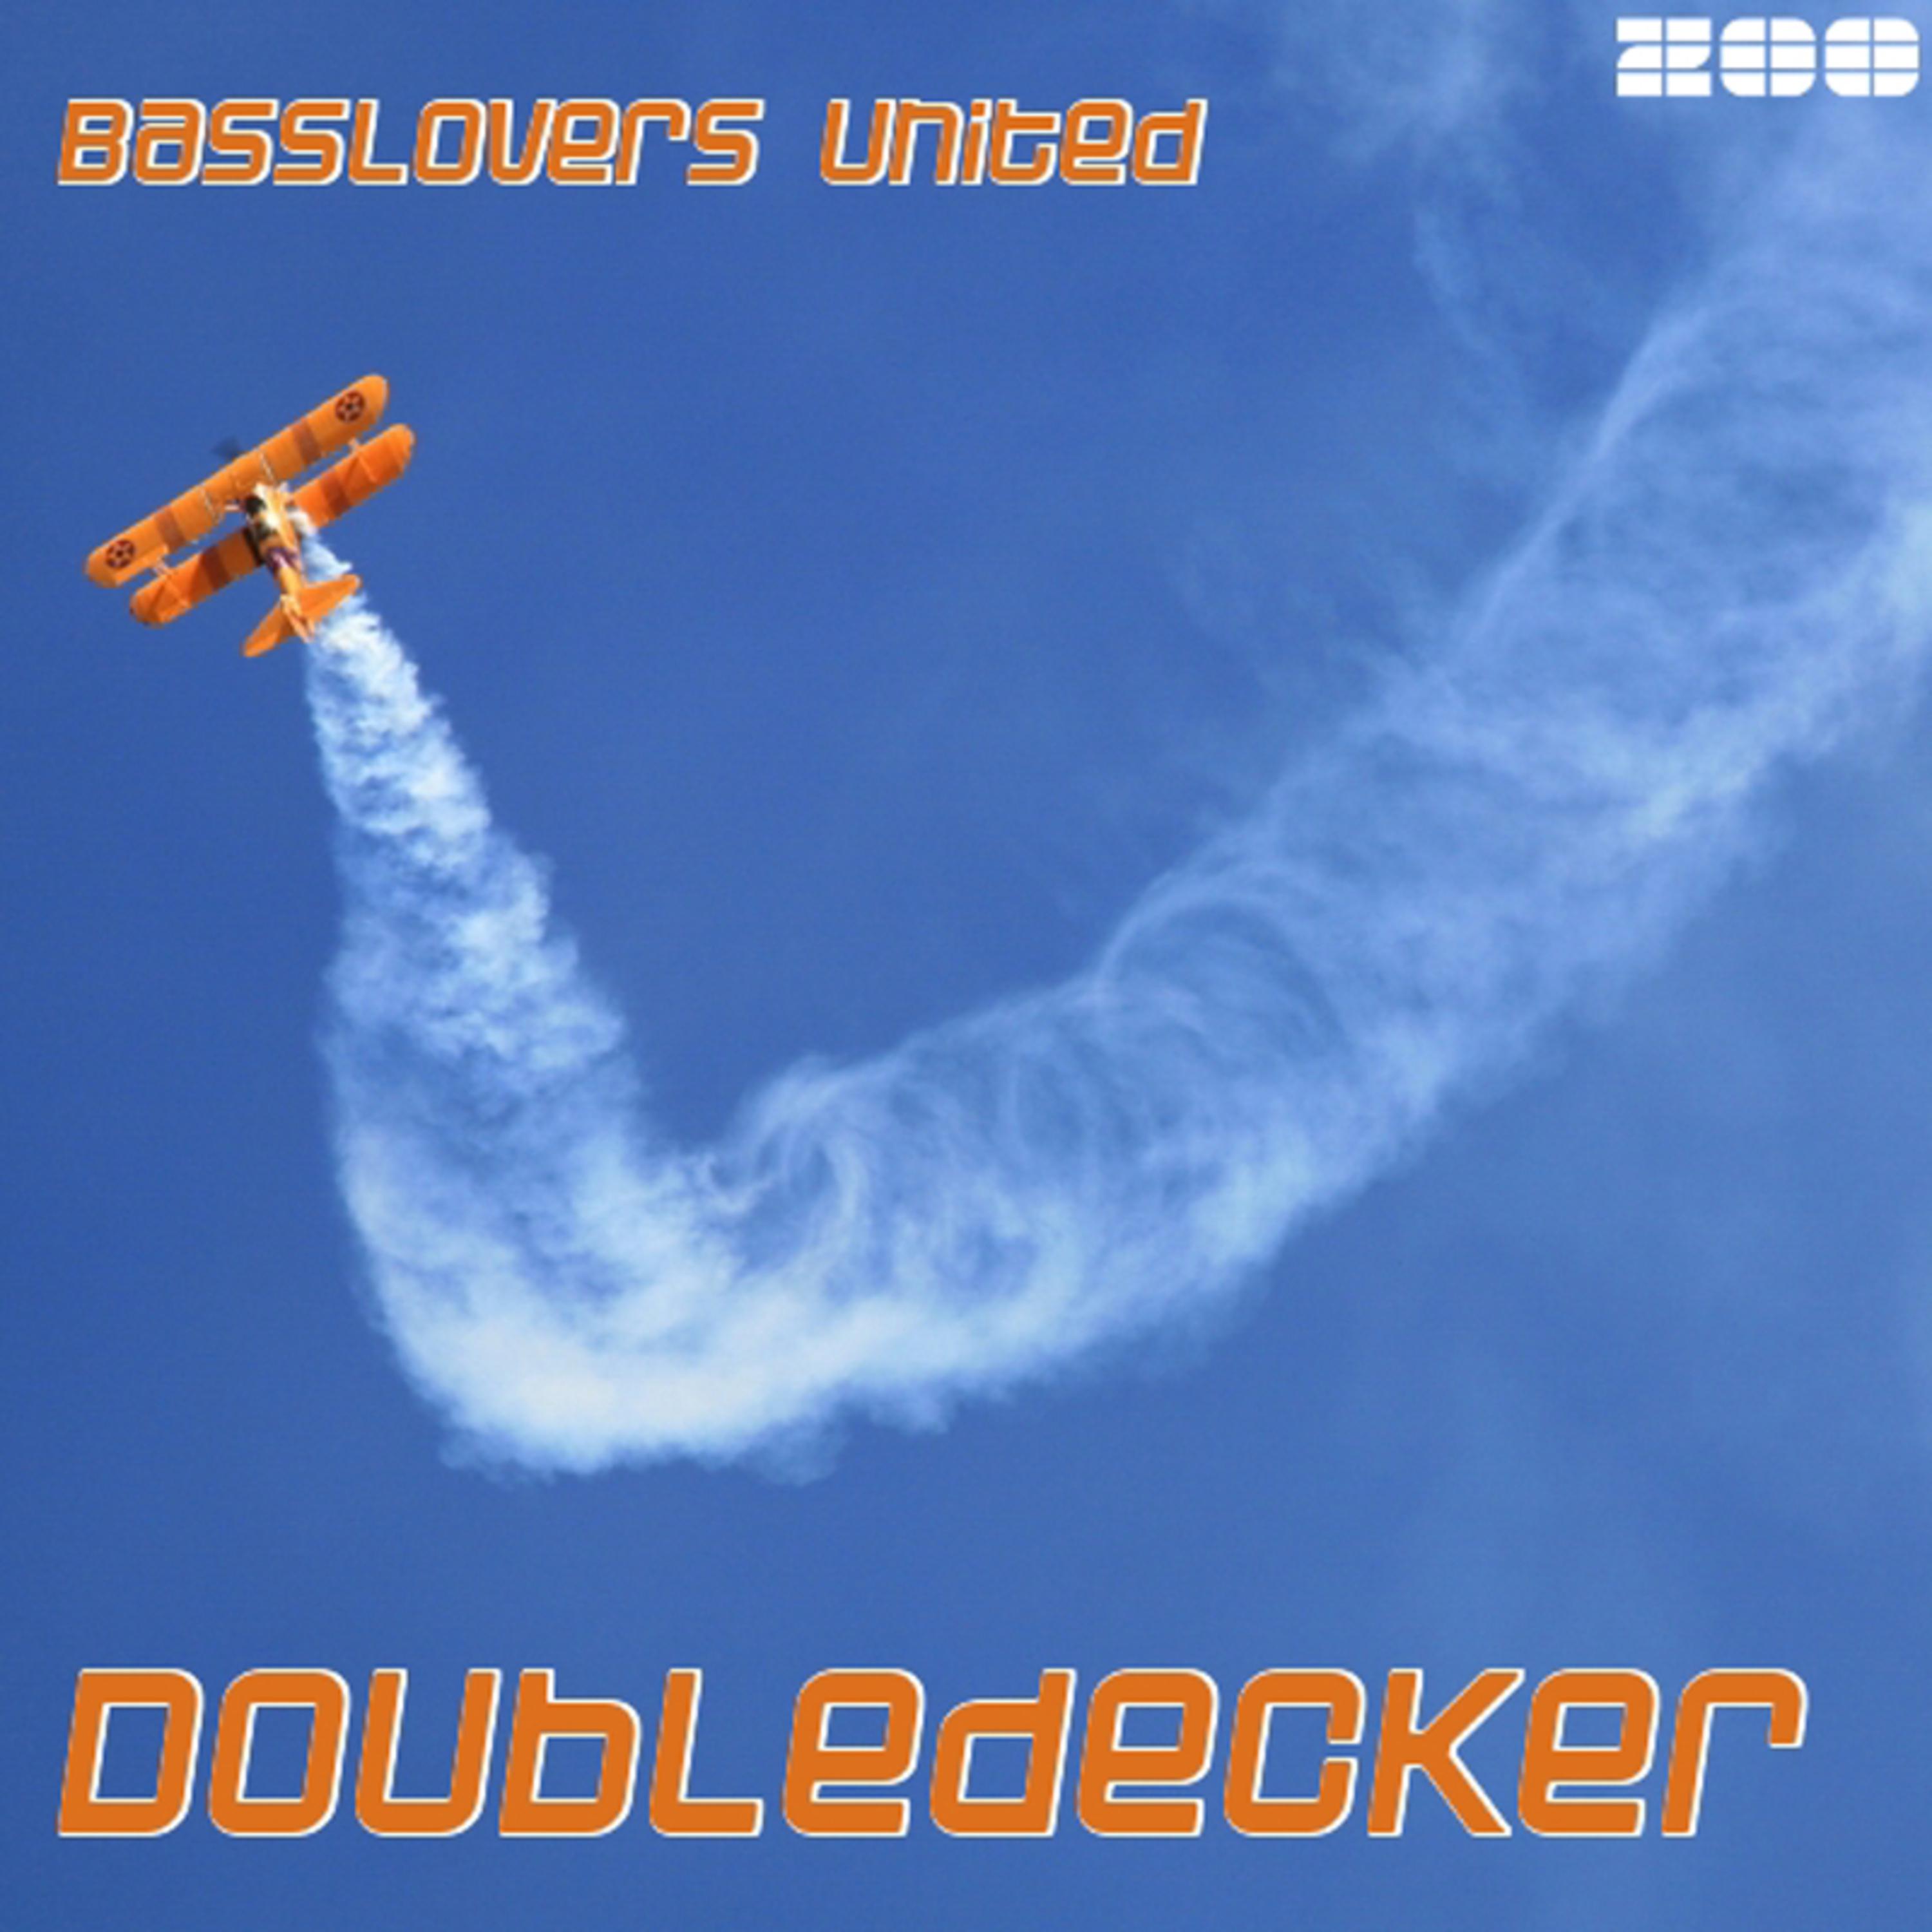 Doubledecker (Marco van Bassken Radio Edit)